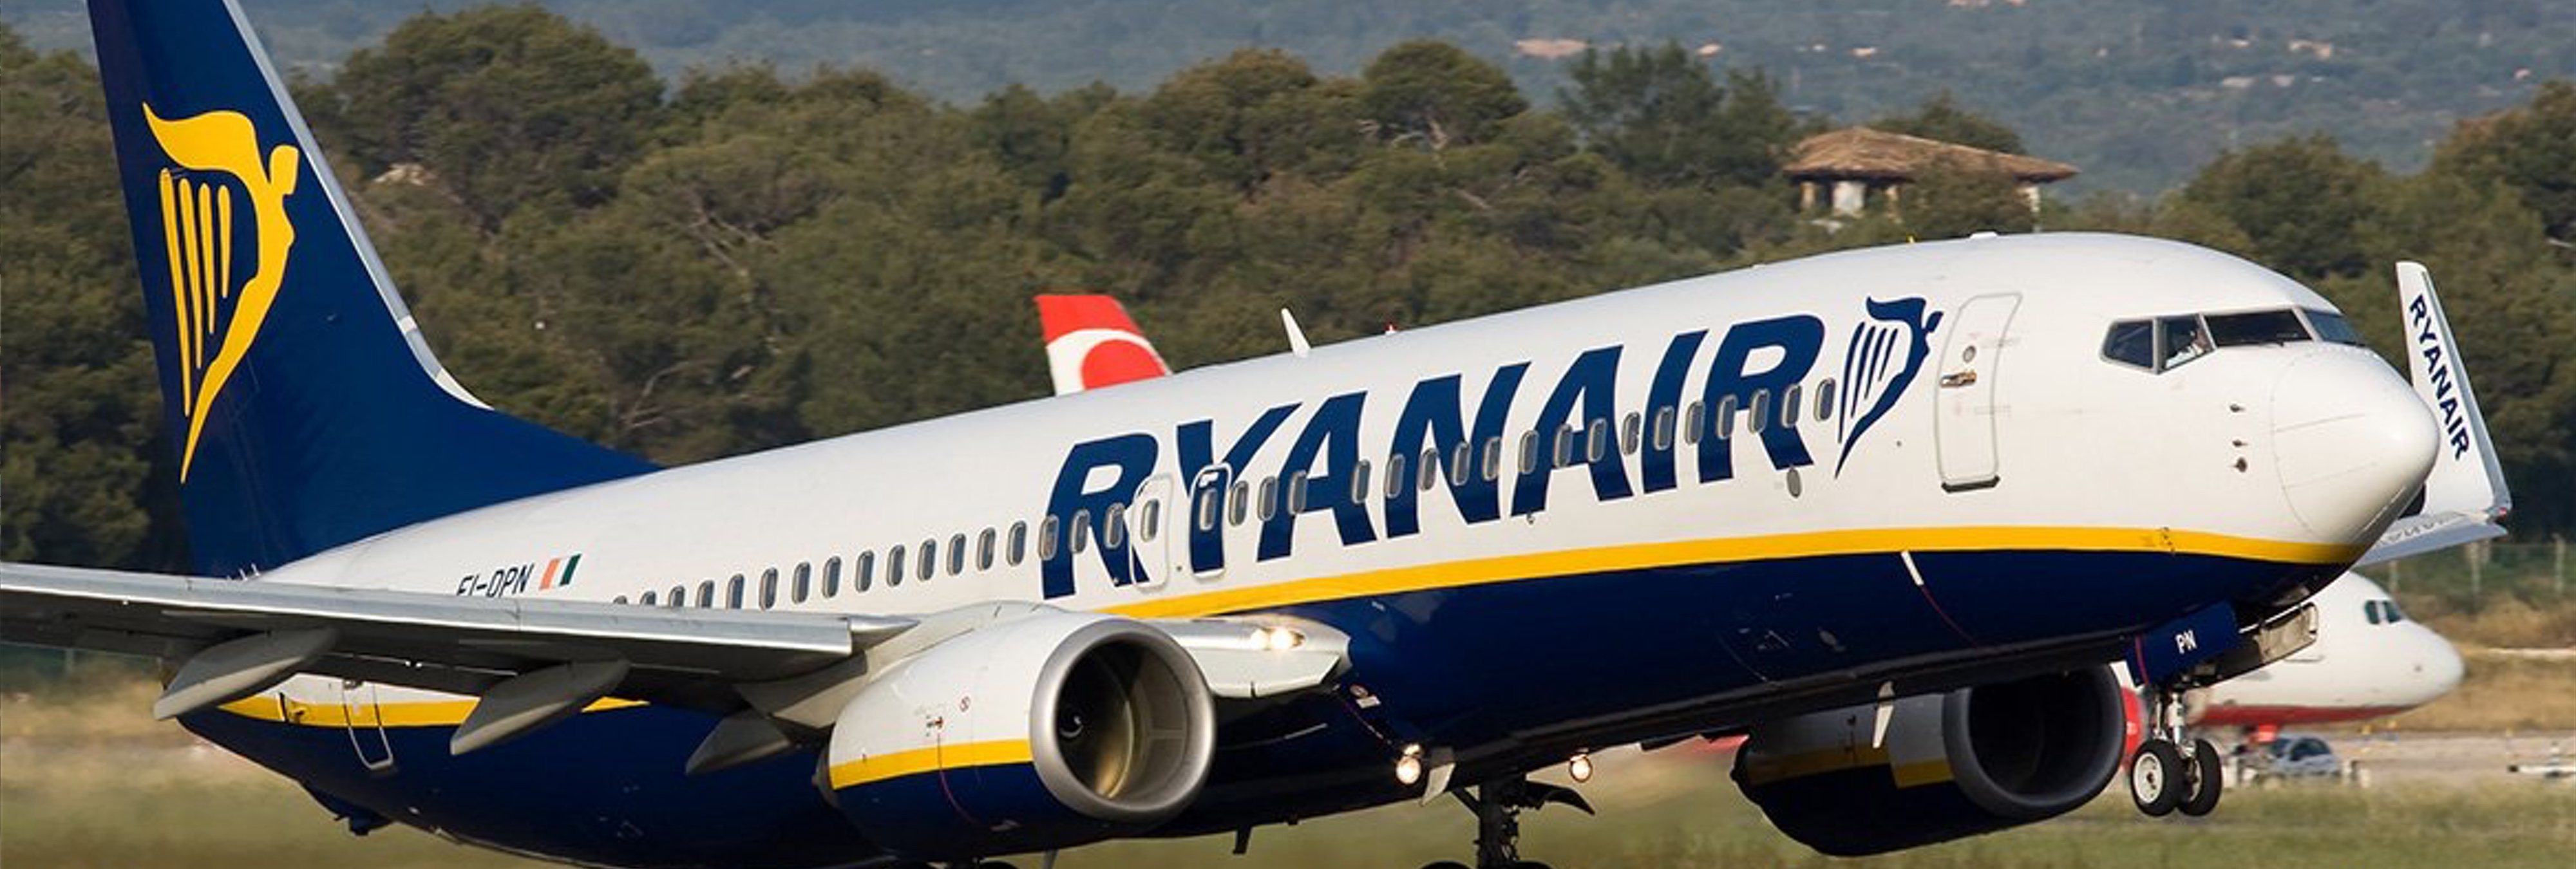 Avión de Ryanair en tierra